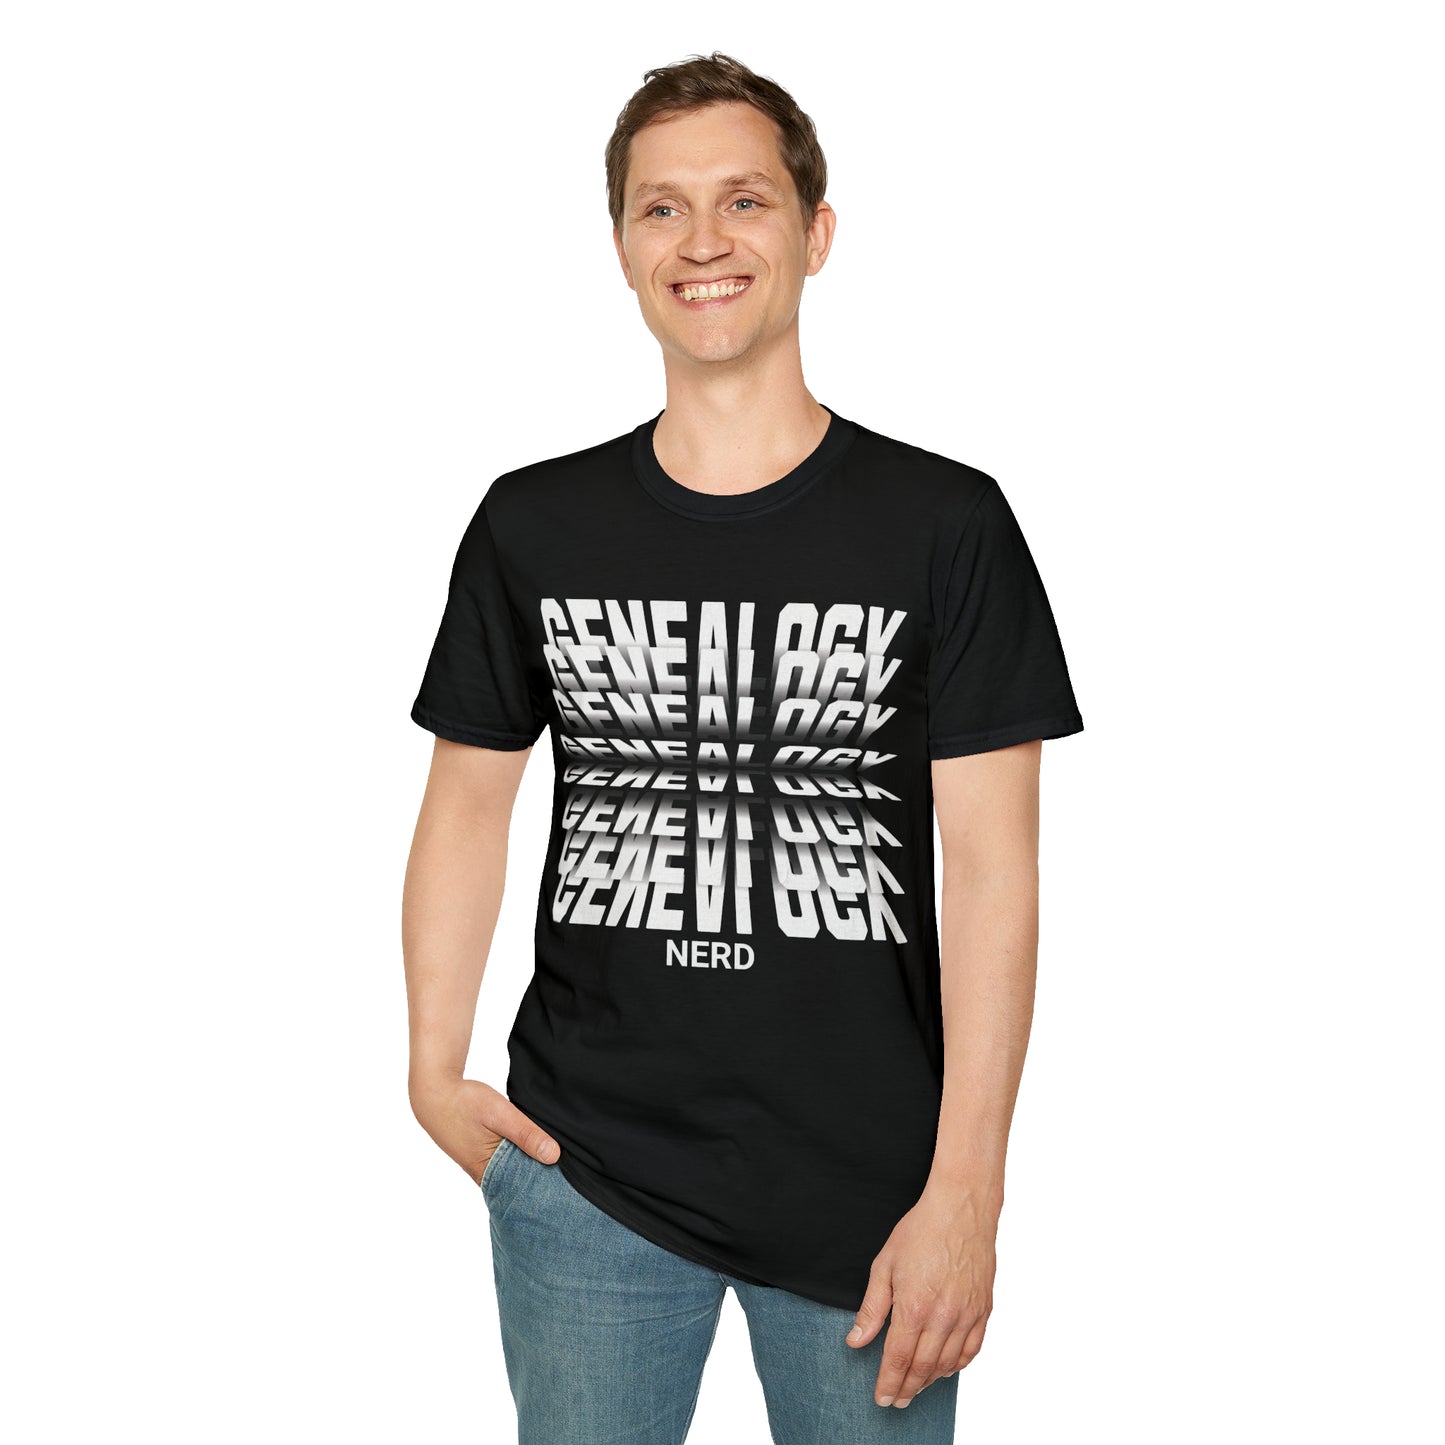 Genealogy Nerd Unisex Softstyle T-Shirt